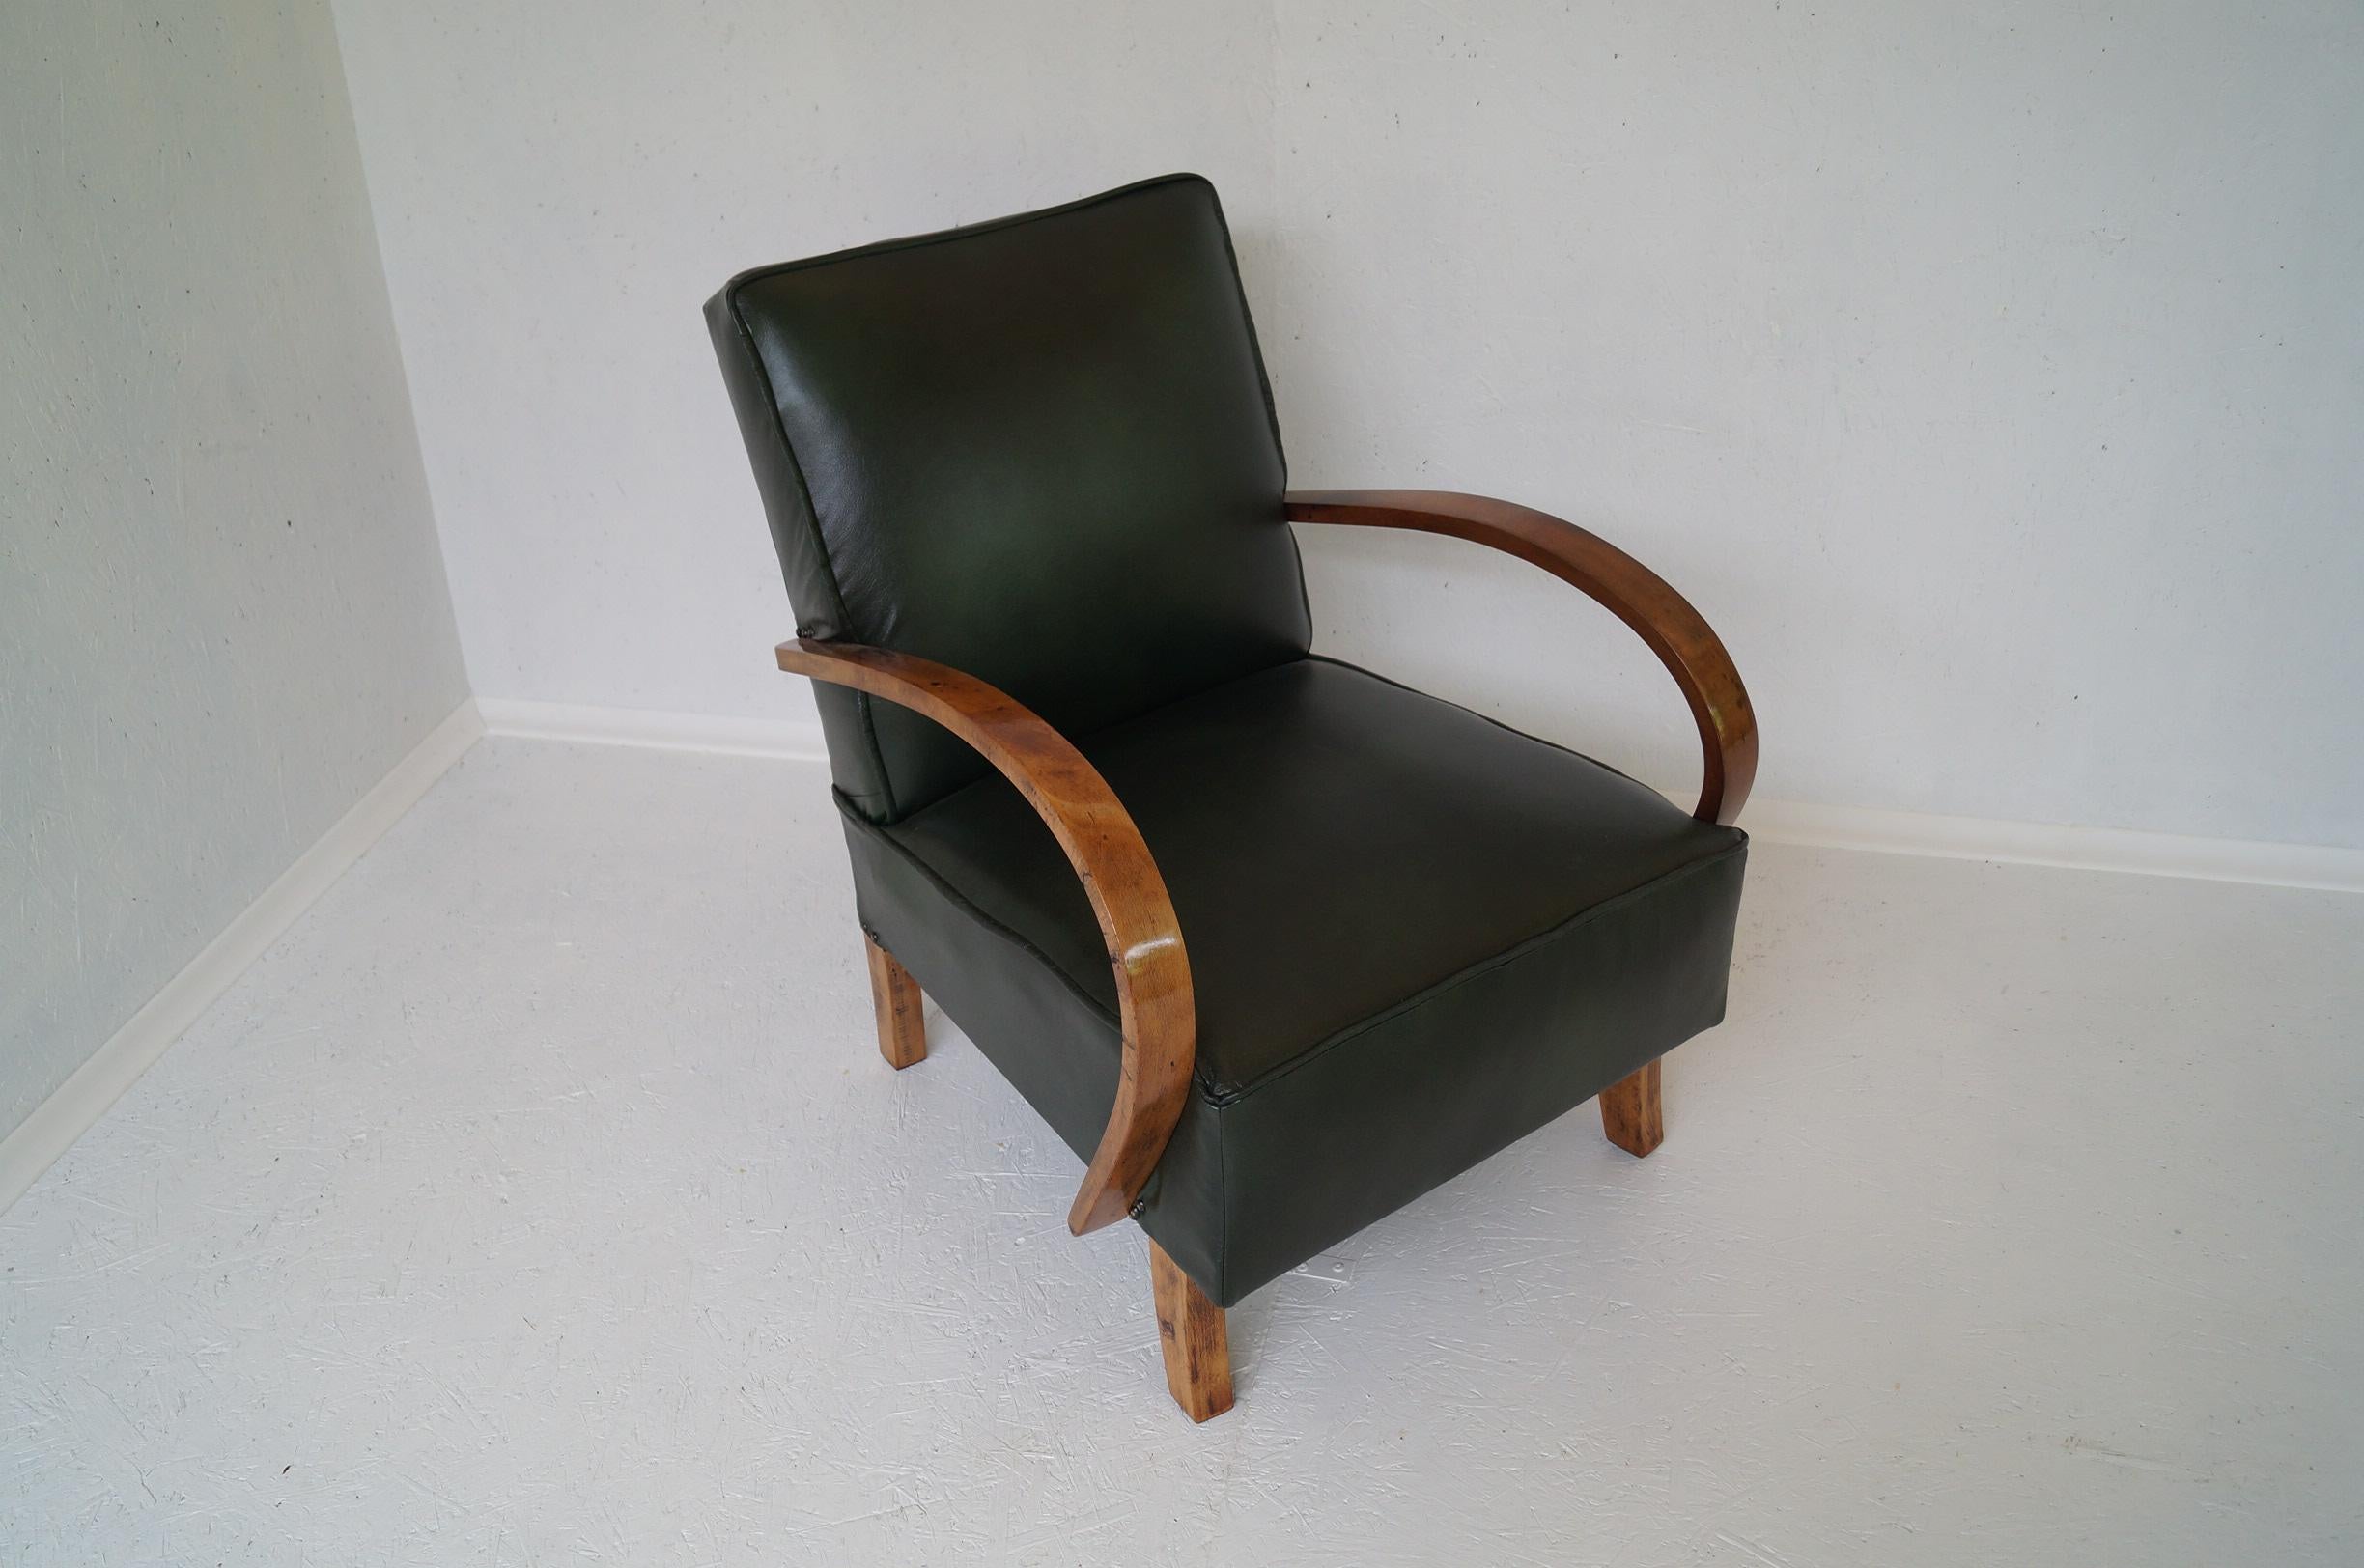  Art Deco Sessel Haut von 1940 Tschechische Republik.
Entworfen von dem berühmten tschechischen Designer Jindrich Halabala, der zu den bedeutendsten Schöpfern der Moderne zählt. Der Höhepunkt seiner Karriere fiel in die 1930er und 1940er Jahre, als